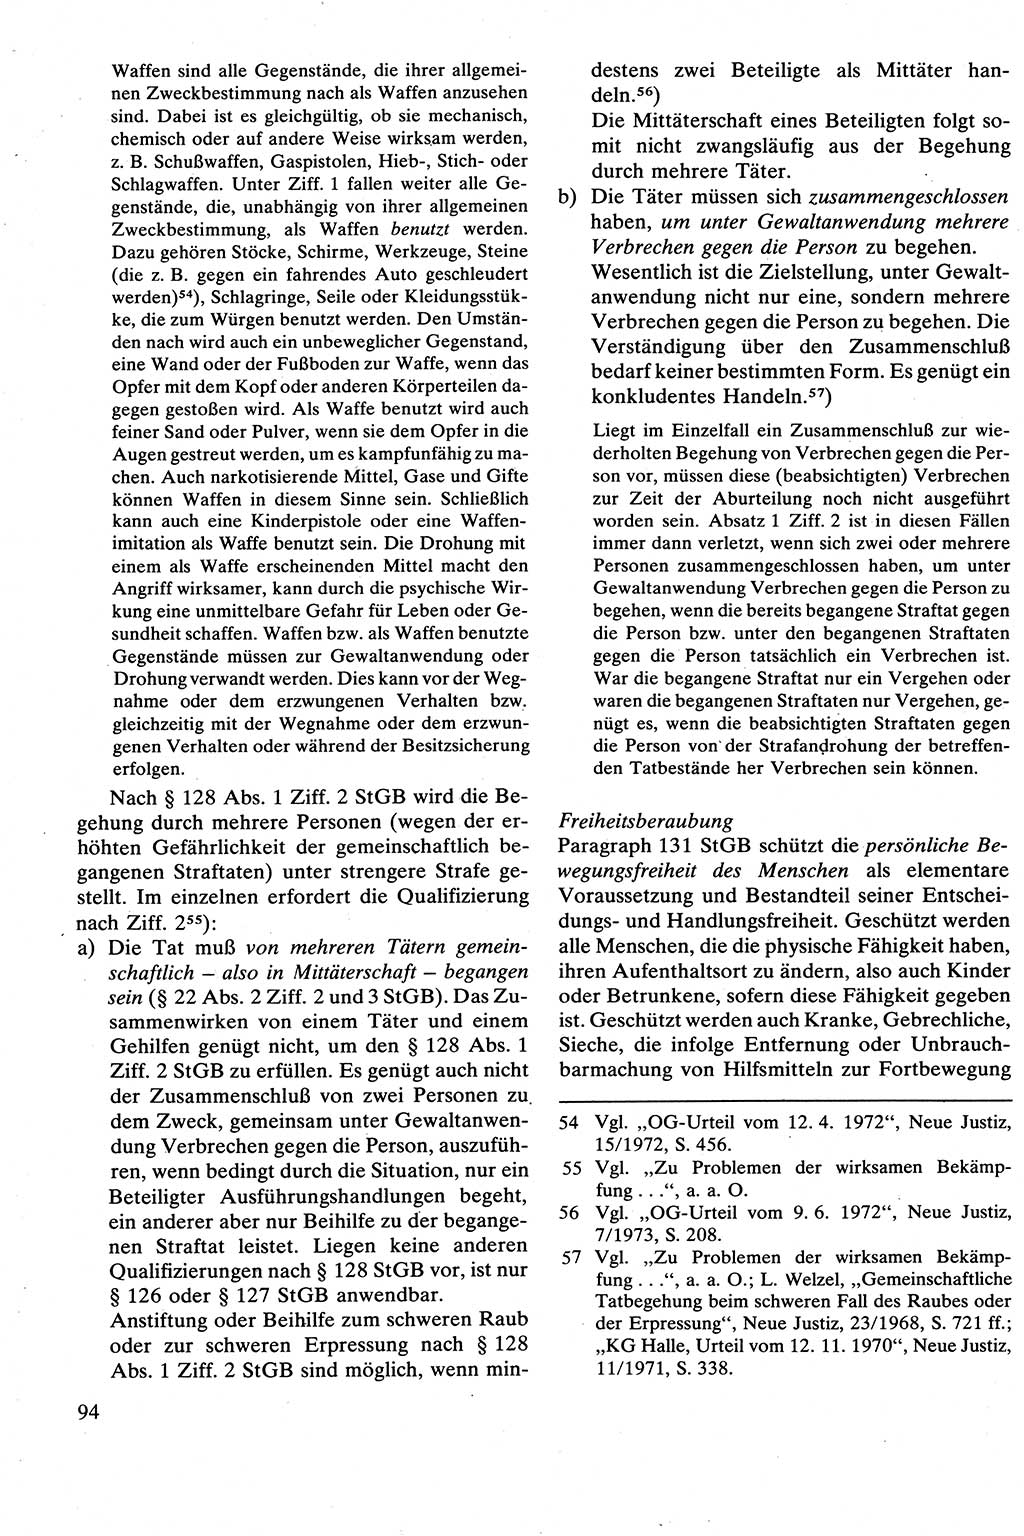 Strafrecht [Deutsche Demokratische Republik (DDR)], Besonderer Teil, Lehrbuch 1981, Seite 94 (Strafr. DDR BT Lb. 1981, S. 94)